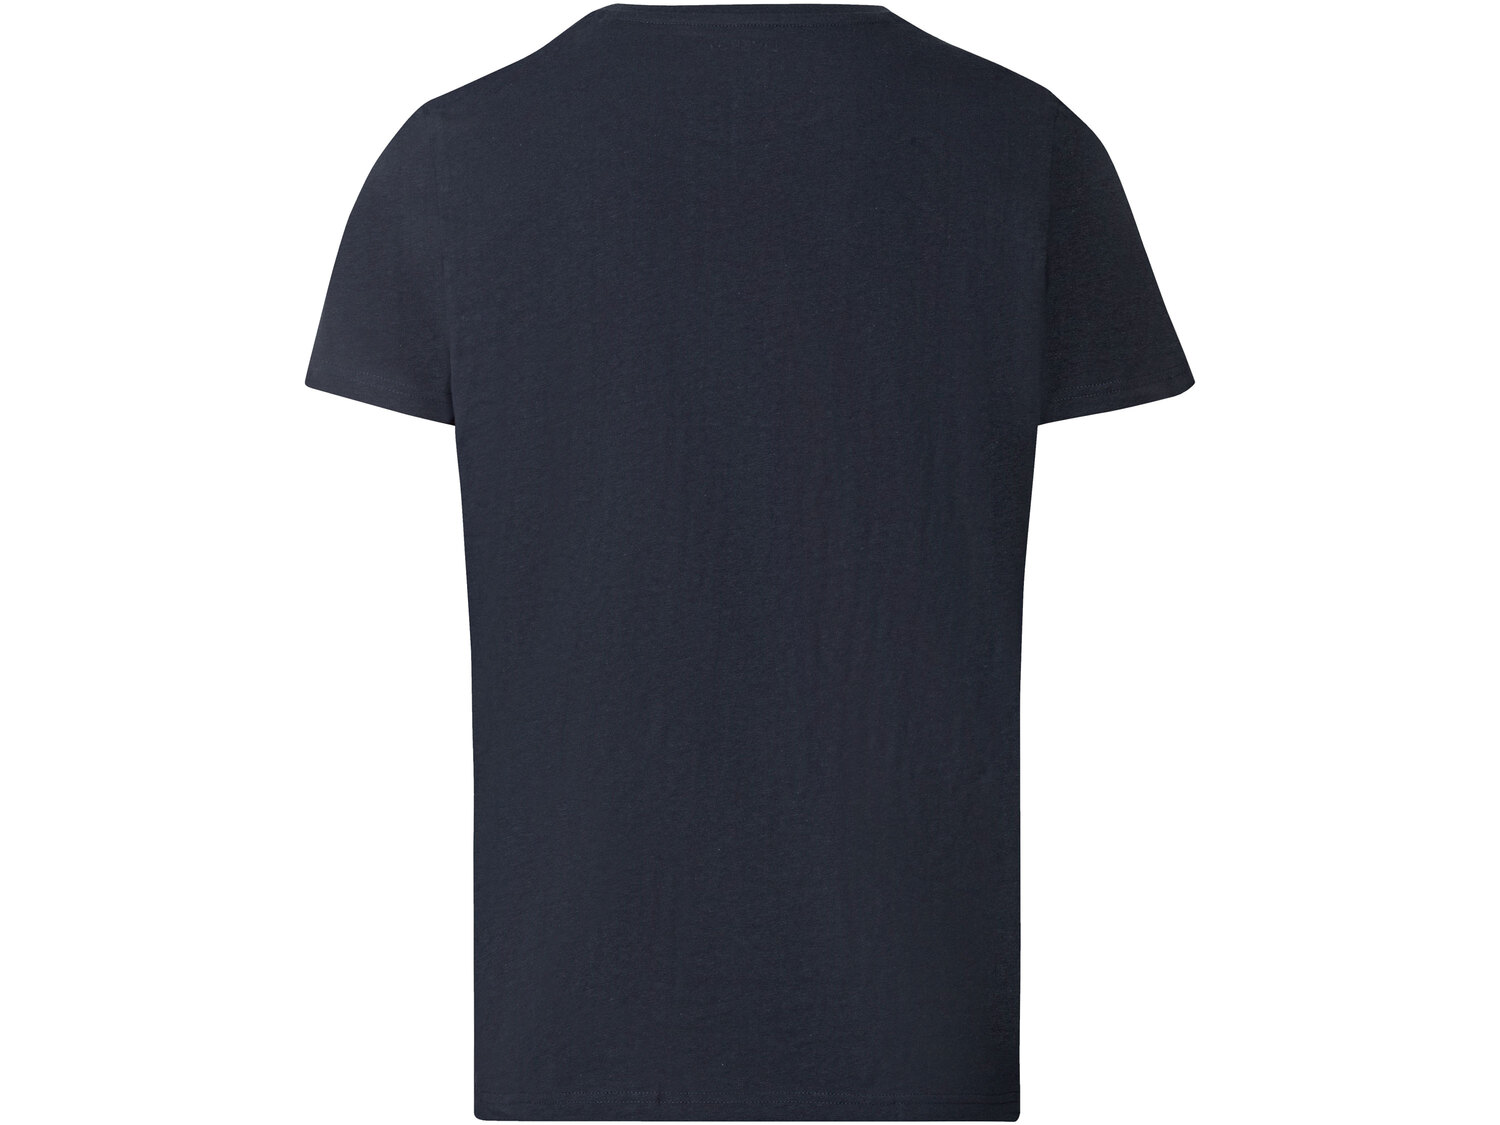 T-shirt męski , cena 14,99 PLN 
- 100% bawełny
- rozmiary: M-XL
Dostępne rozmiary

Opis

- ...